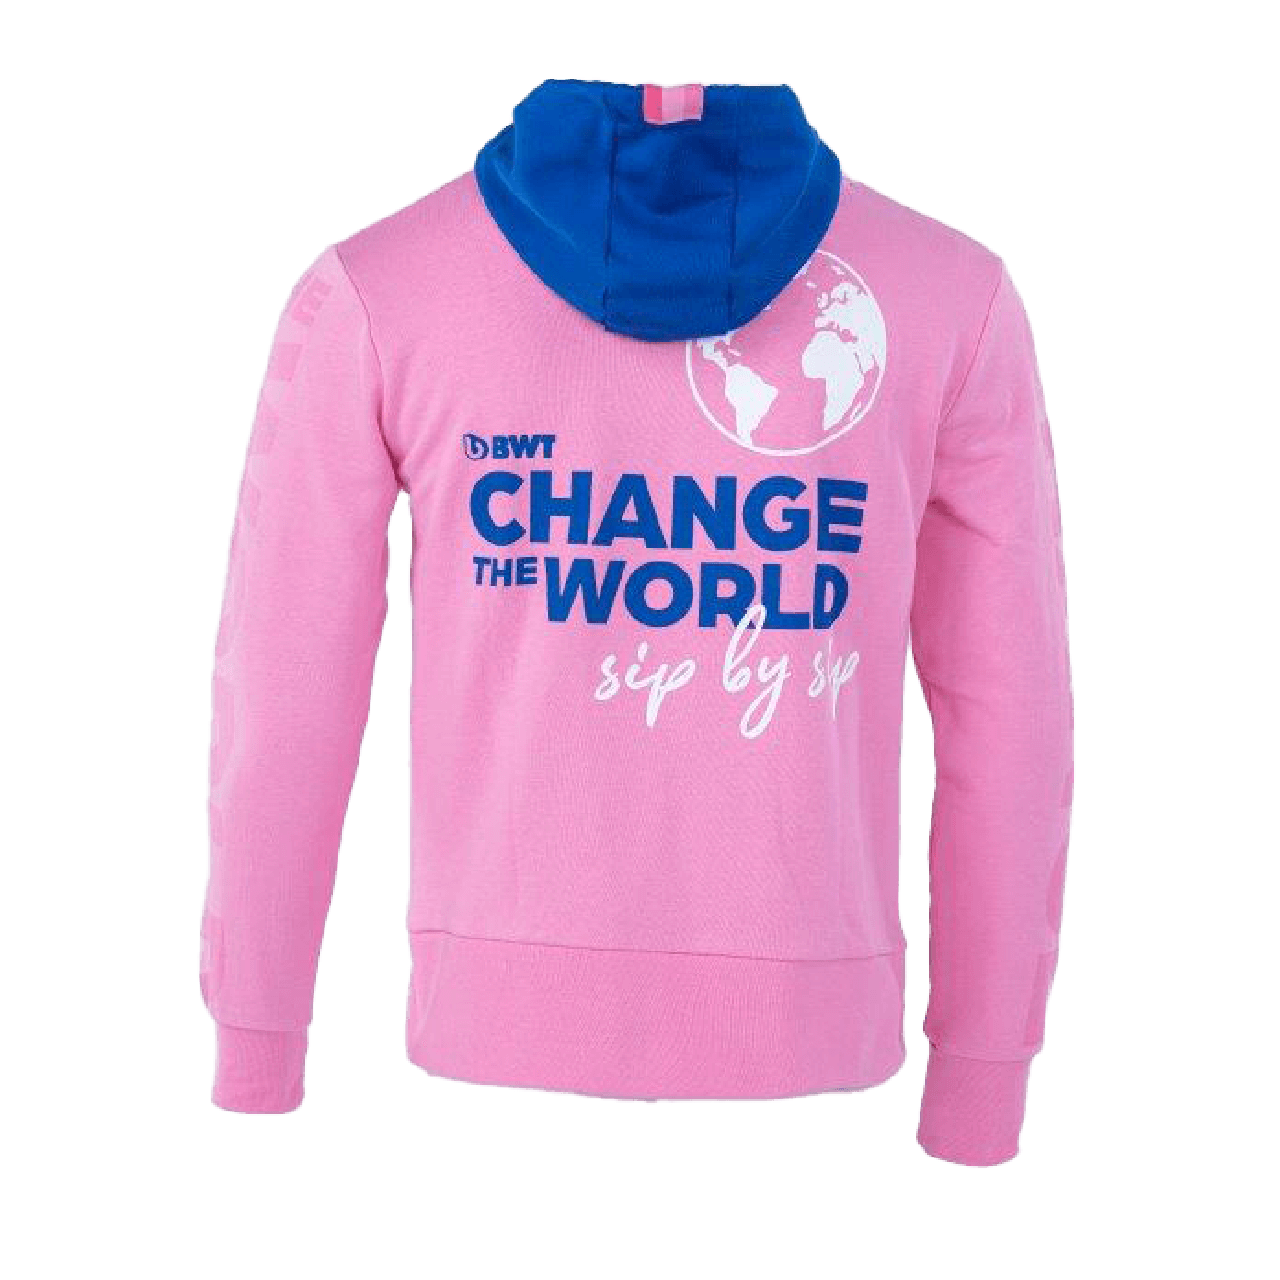 BWT Change the World Kapuzenpullover Damen Rückseite mit blauem CTW Logog